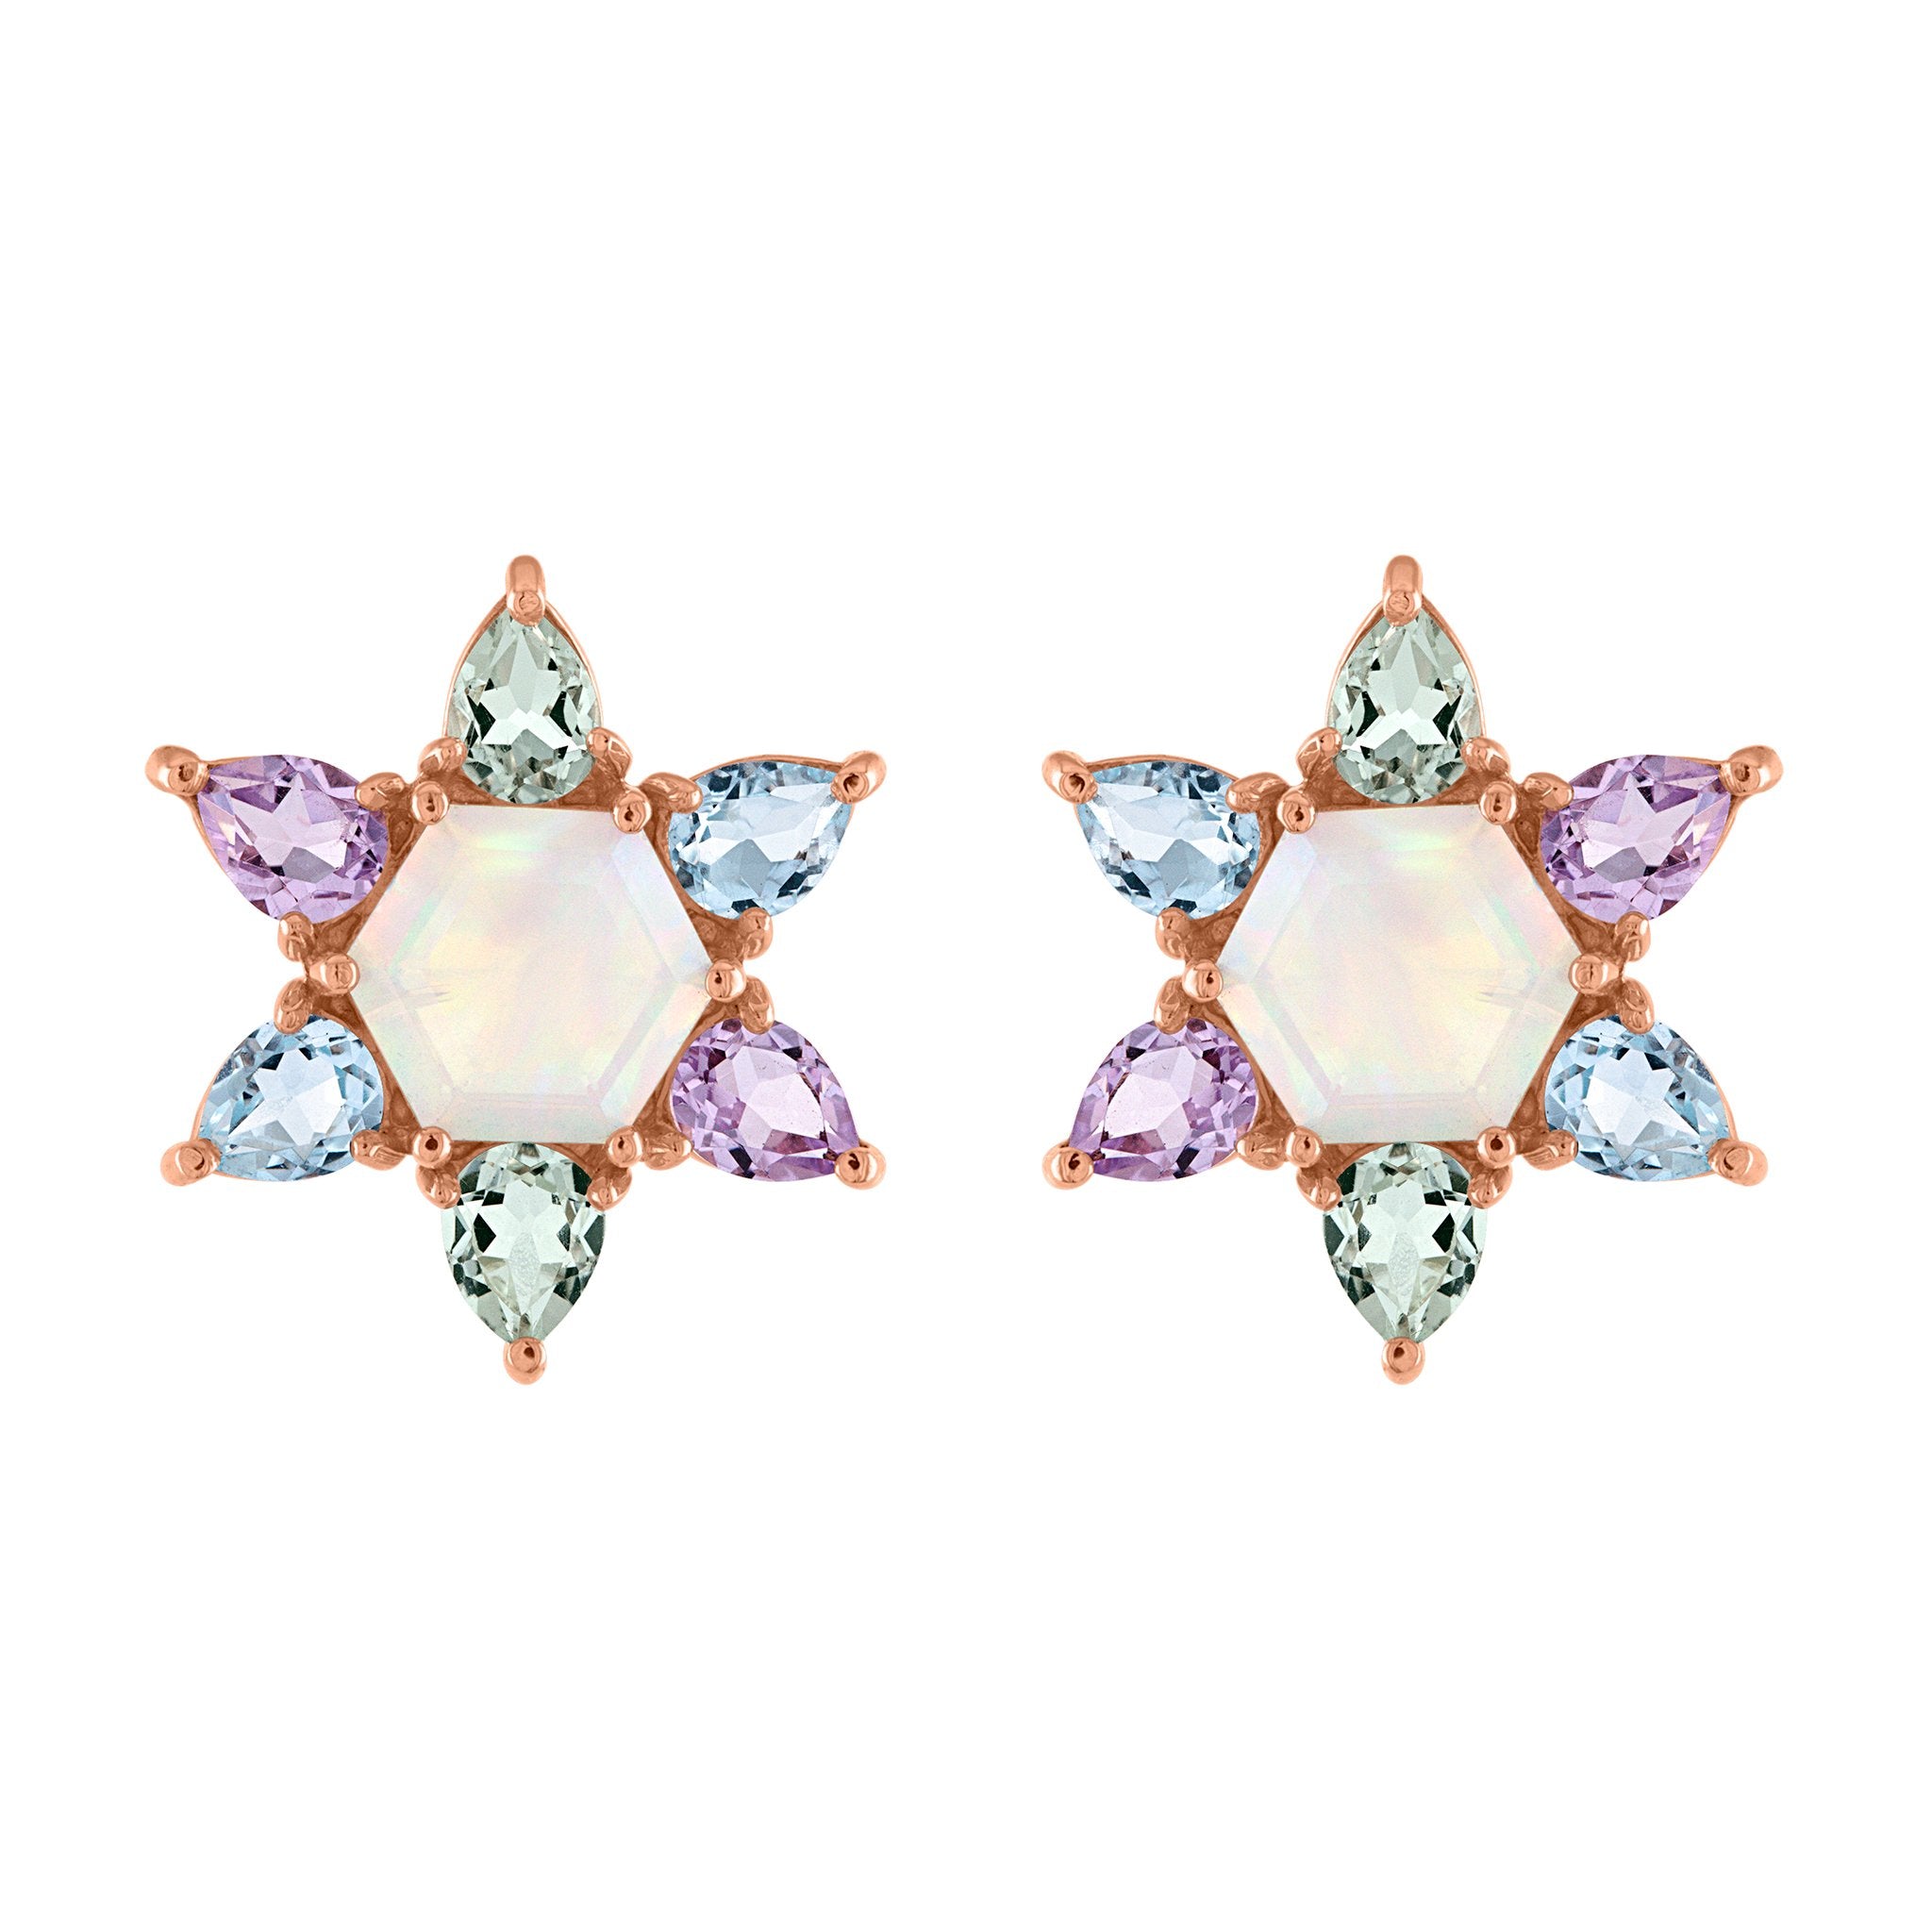 Bloom Stud Earrings: 14k Rose Gold, Opal, Green, Lavender, Swiss Blue Topaz Pears